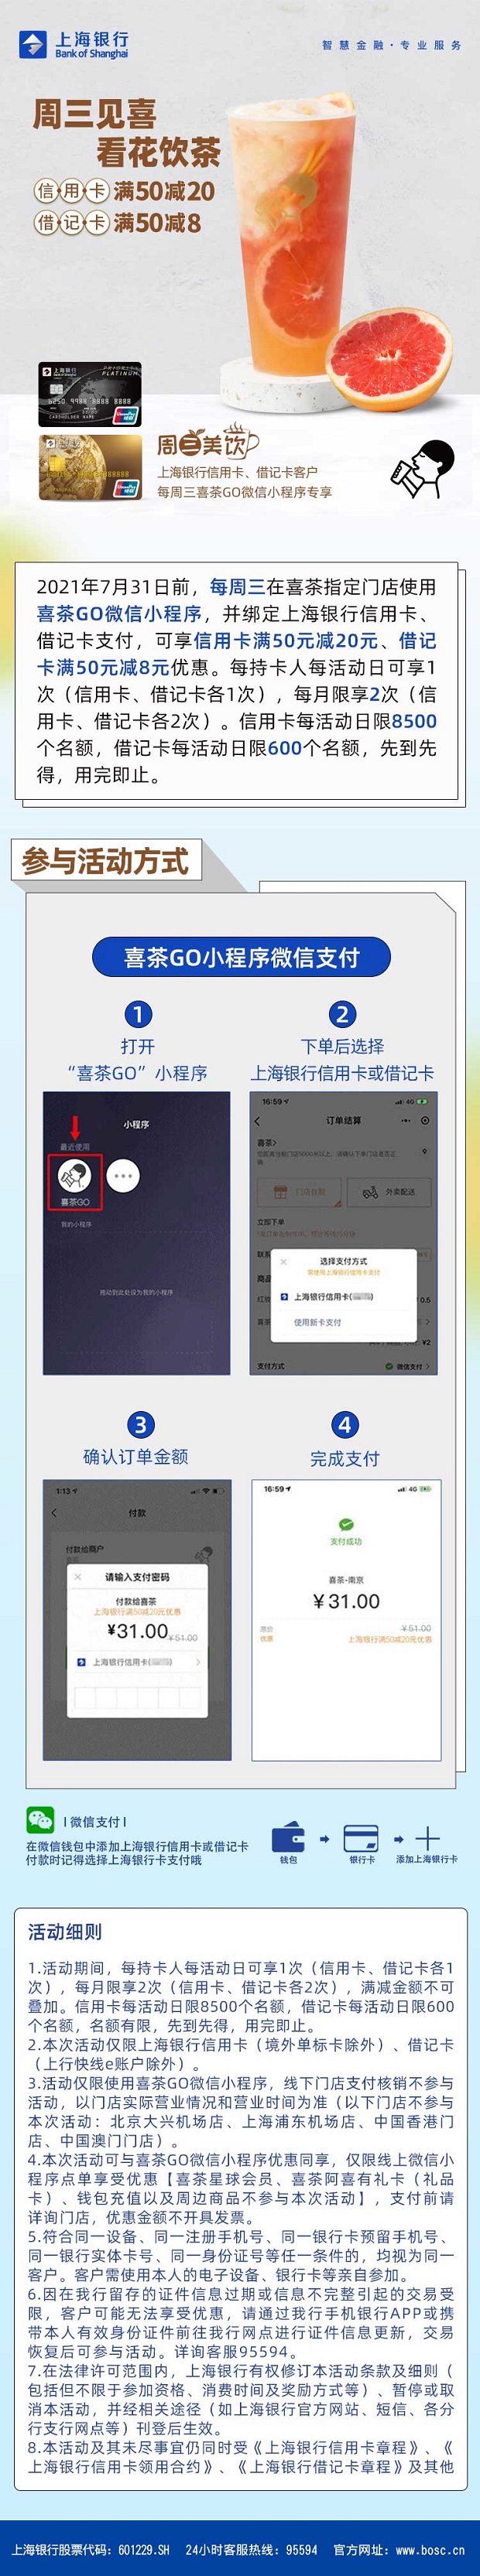 上海银行信用卡喜茶GO微信小程序信用卡满50减20，借记卡满50减8